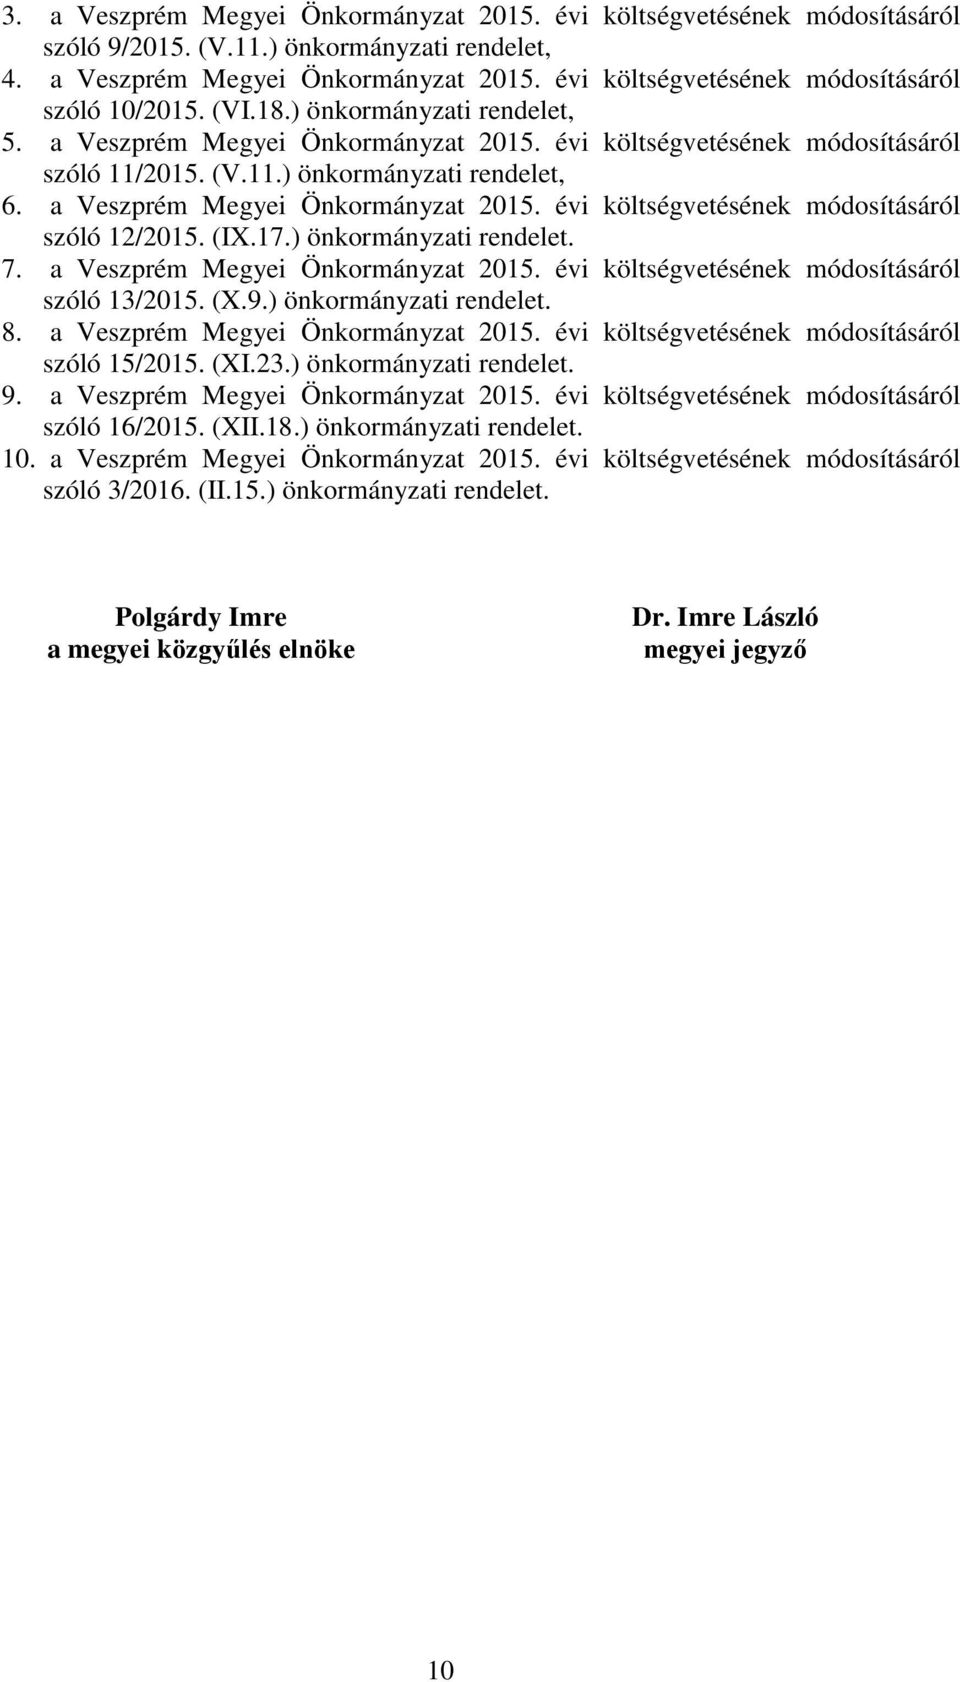 a Veszprém Megyei Önkormányzat költségvetésének módosításáról szóló 12/2015. (IX.17.) önkormányzati rendelet. 7. a Veszprém Megyei Önkormányzat költségvetésének módosításáról szóló 13/2015. (X.9.